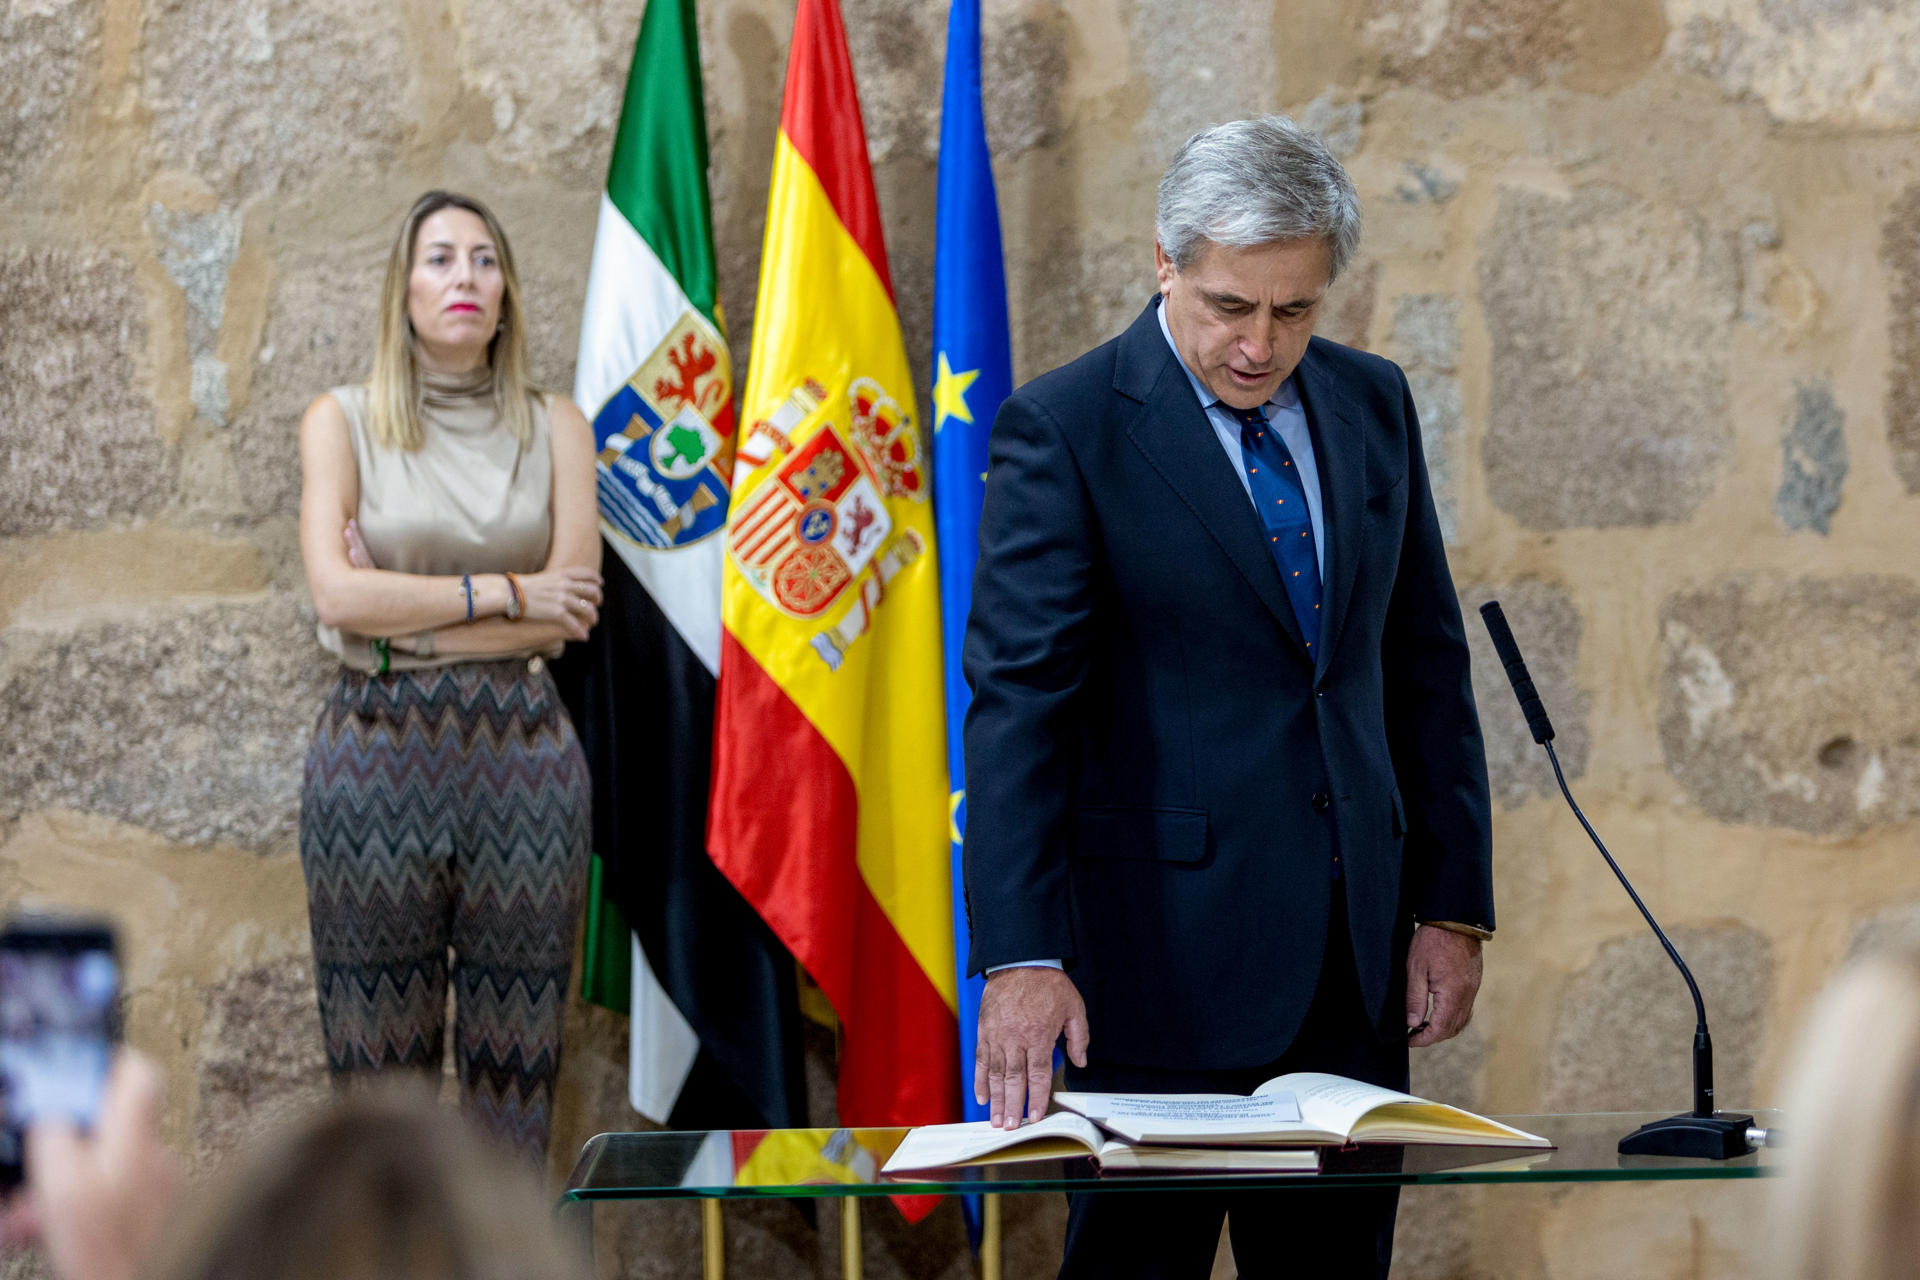 La presidenta de Extremadura, María Guardiola (i) durante la toma de posesión del consejero de Vox, Ignacio Higuero (d) como nuevo consejero de Gestión Forestal y Mundo Rural durante un acto celebrado este lunes en Mérida. EFE/ Jero Morales